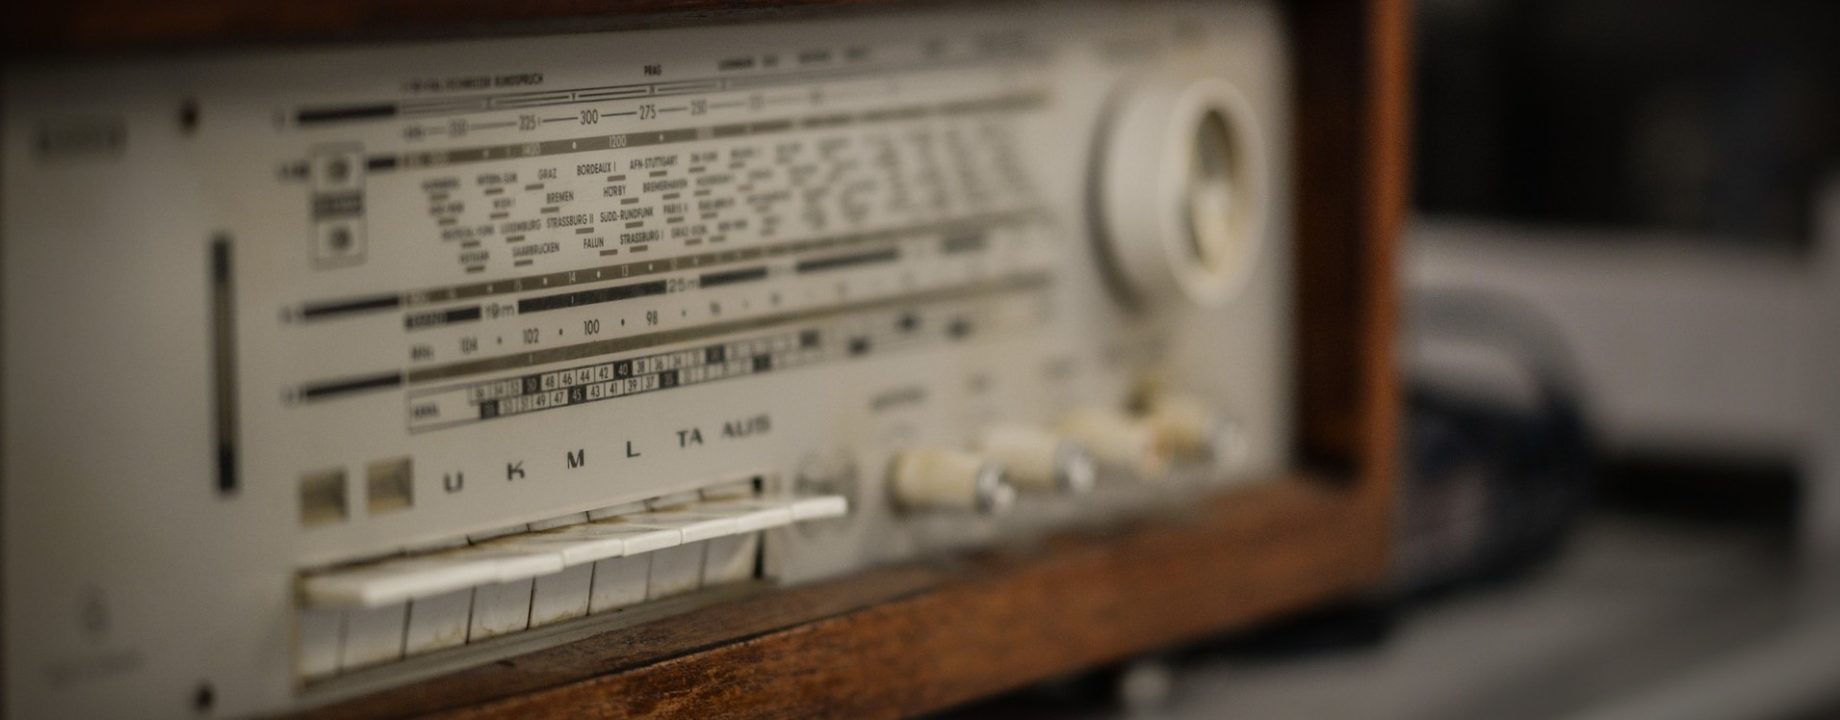 Radio g0d2a3341d 1920 2